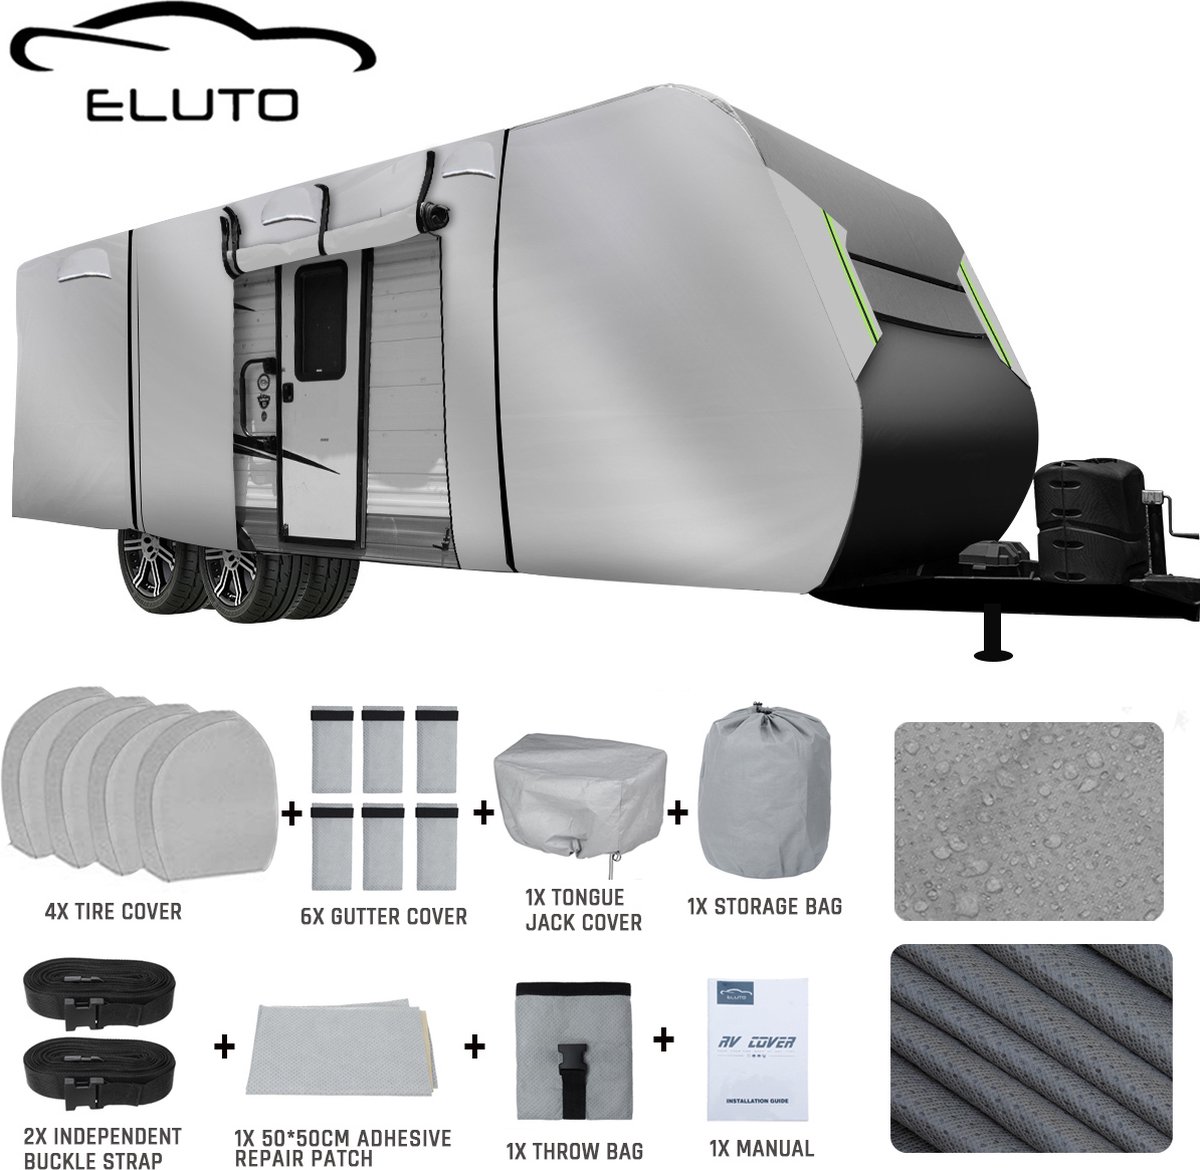 ELUTO Caravanhoes 732*267*274 CM - Waterdicht, UV-bescherming, sneeuwbestendig - Grijs